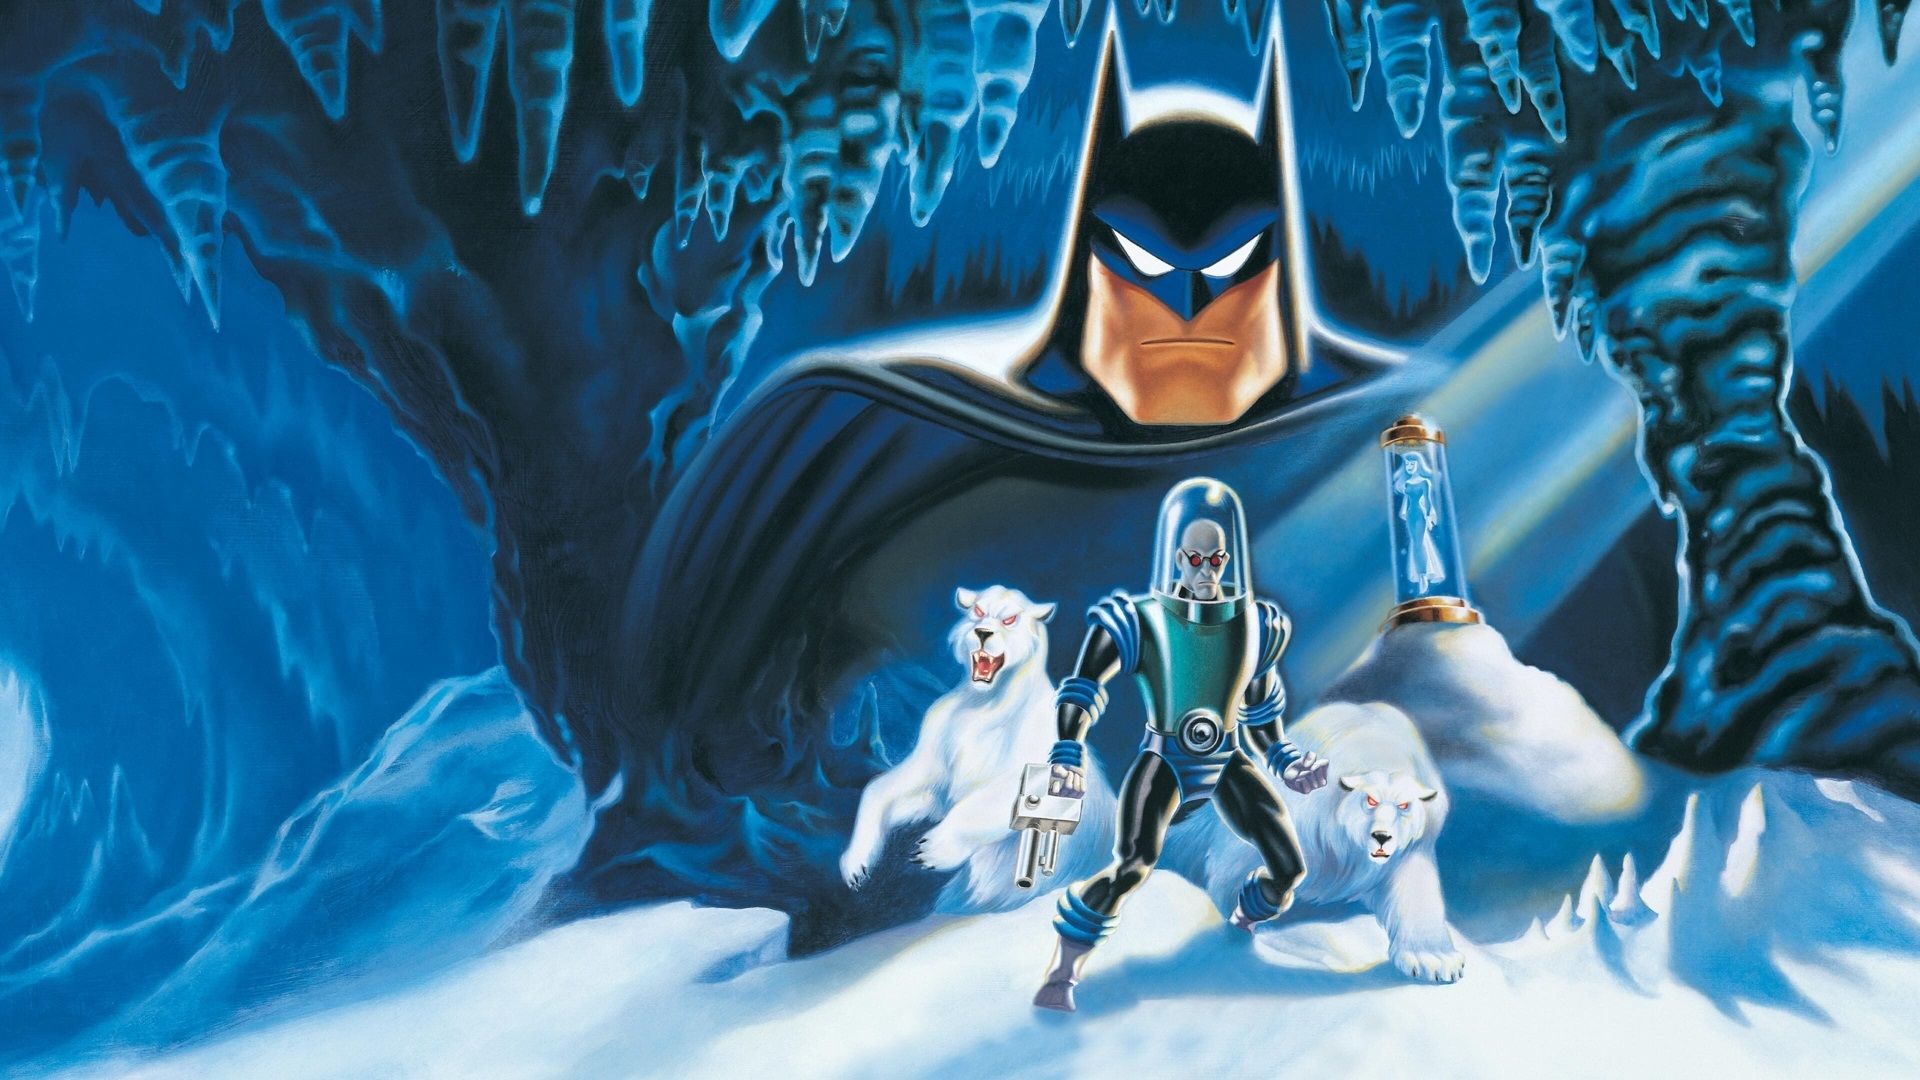 Batman & Mr. Freeze: SubZero background